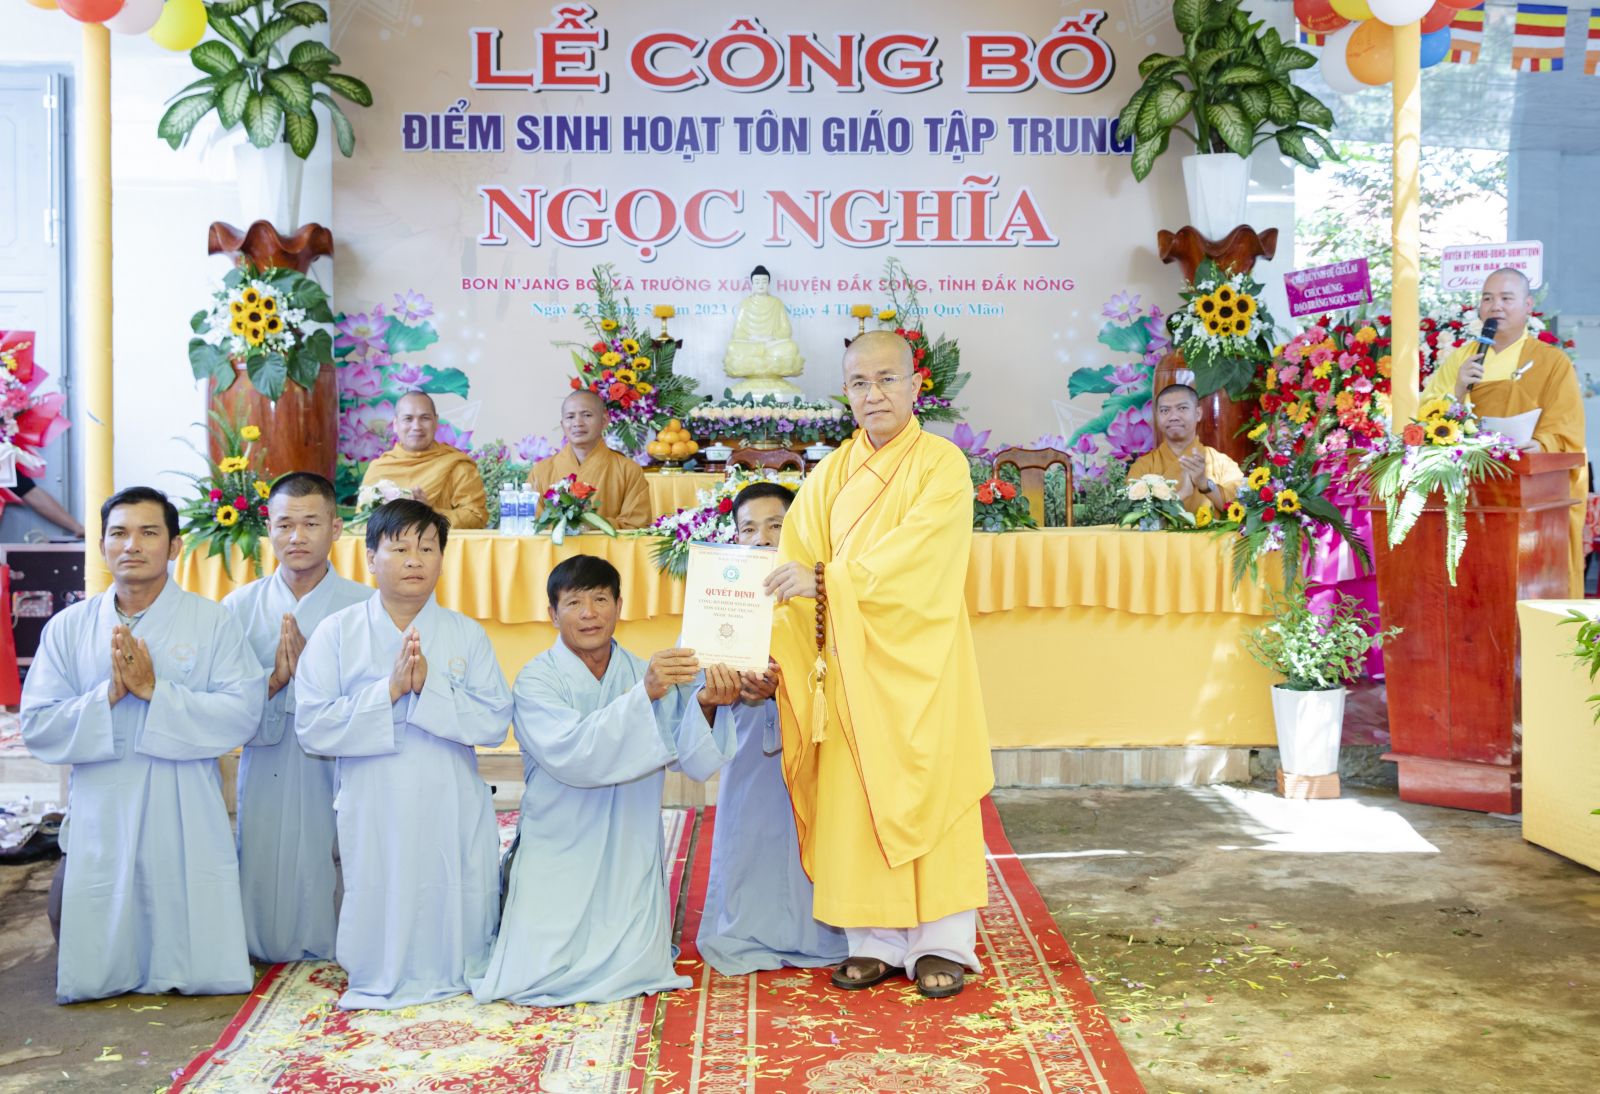 Lễ Công bố thành lập điểm sinh hoạt Tôn giáo tập trung Ngọc Nghĩa  xã Trường Xuân, huyện Đắk Song